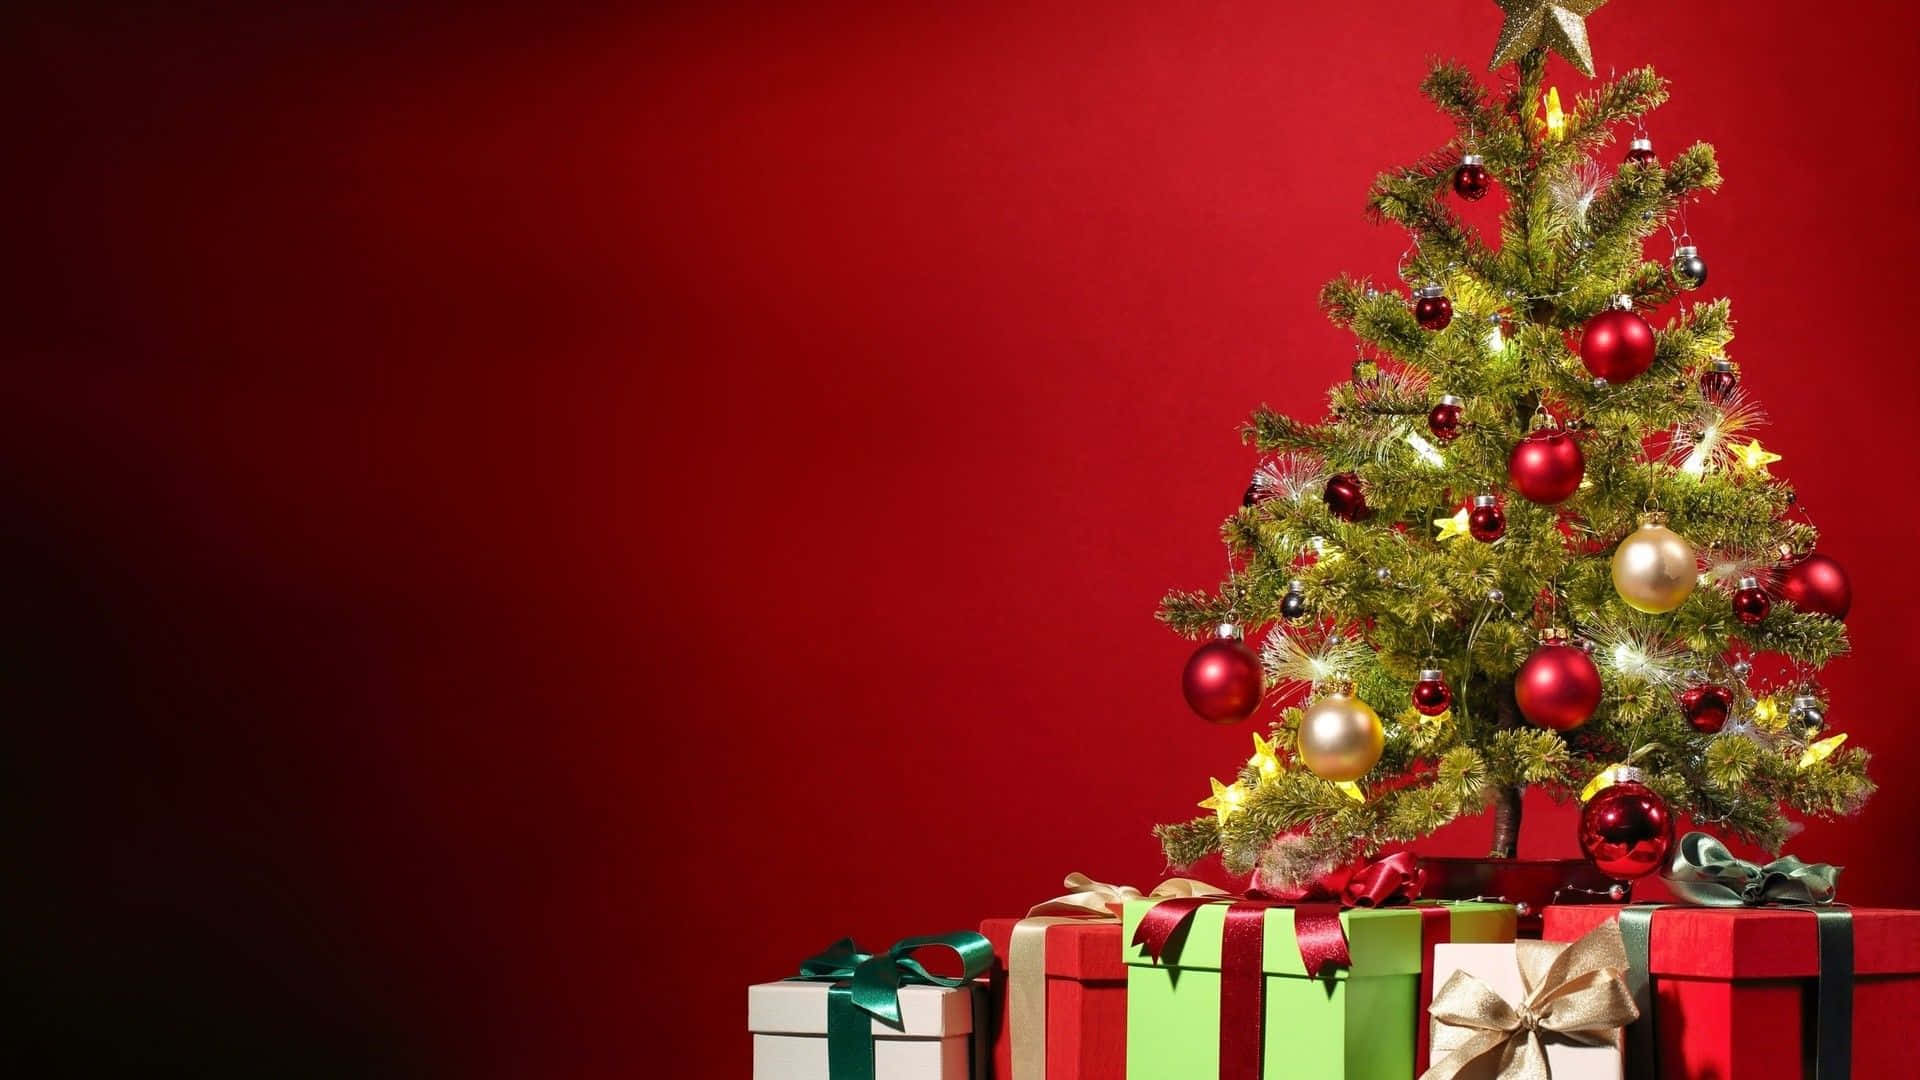 Divertitidurante Le Vacanze Con Questa Festosa Albero Di Natale Adornato Di Stelle E Colorati Ornamenti.